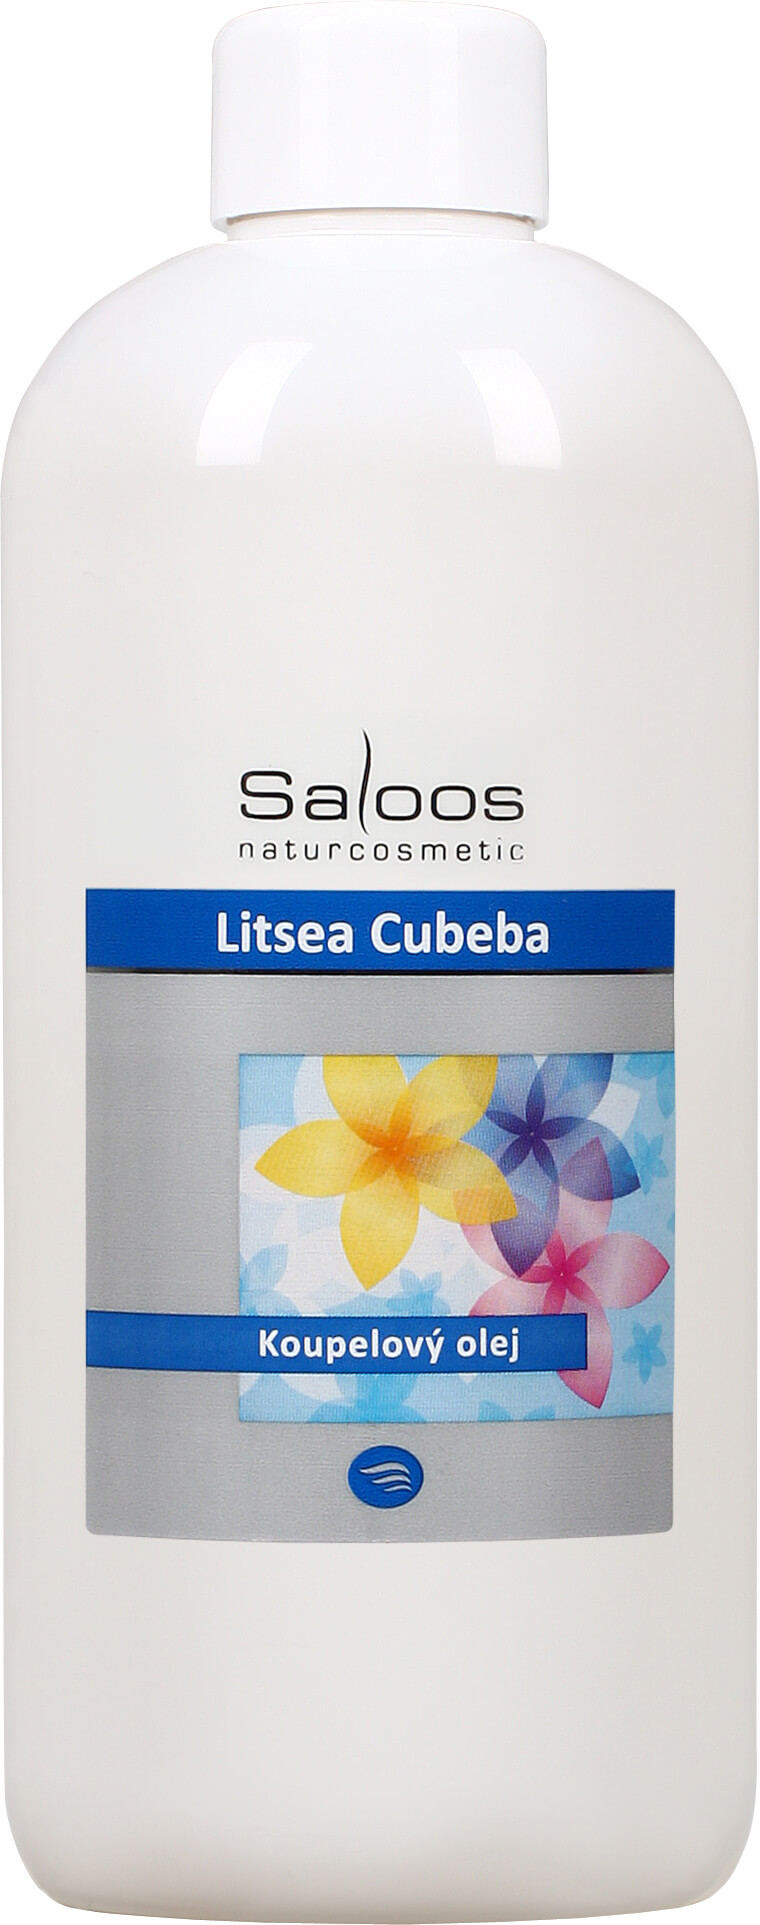 Zobrazit detail výrobku Saloos Koupelový olej - Litsea cubeba 500 ml + 2 měsíce na vrácení zboží